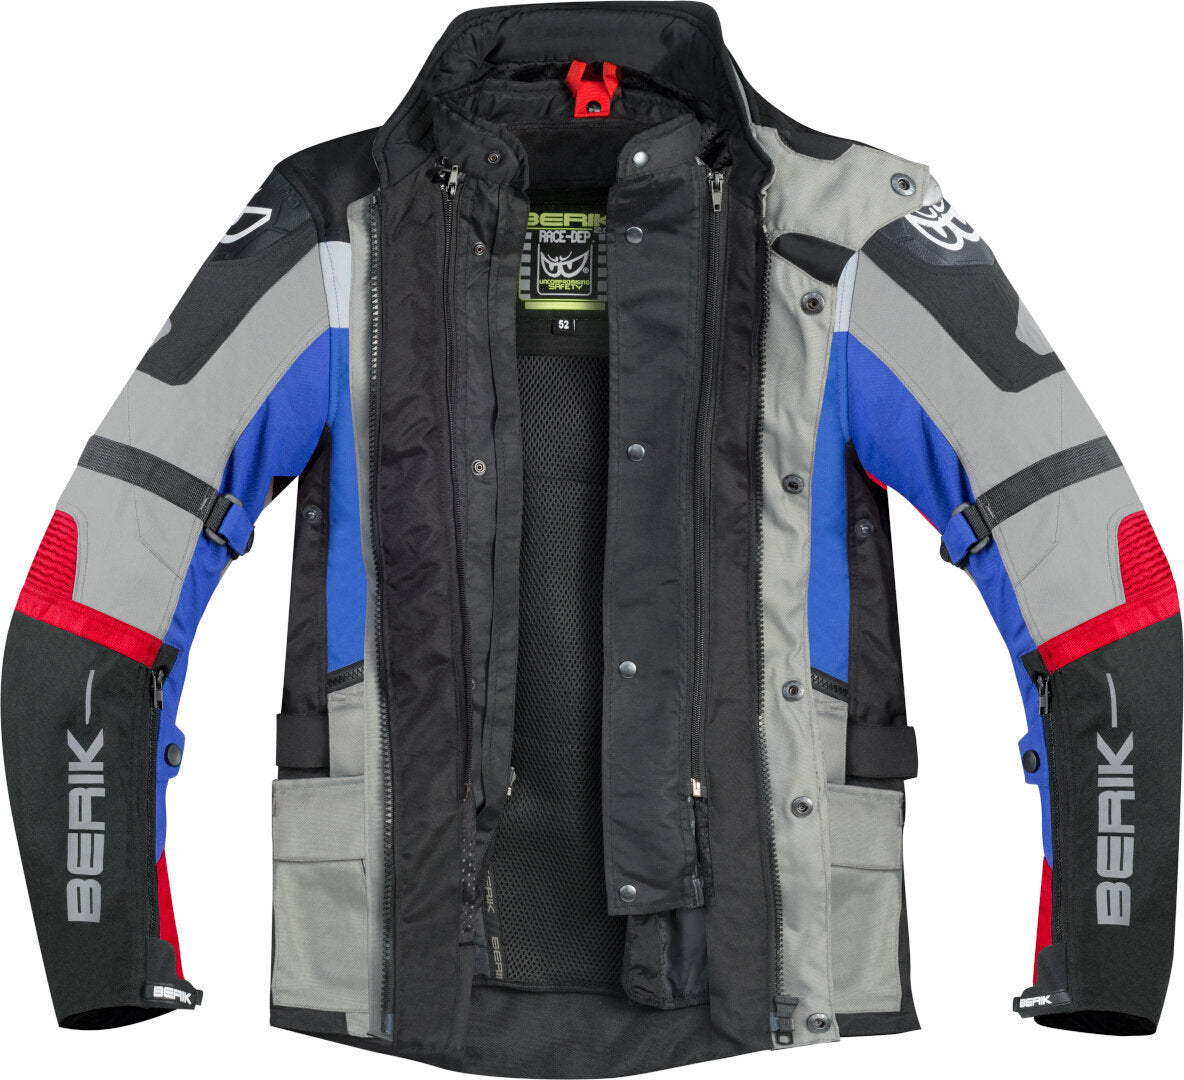 Berik Dakota Waterproof 3in1 Motorcycle Textile Jacket#color_black-grey-blue